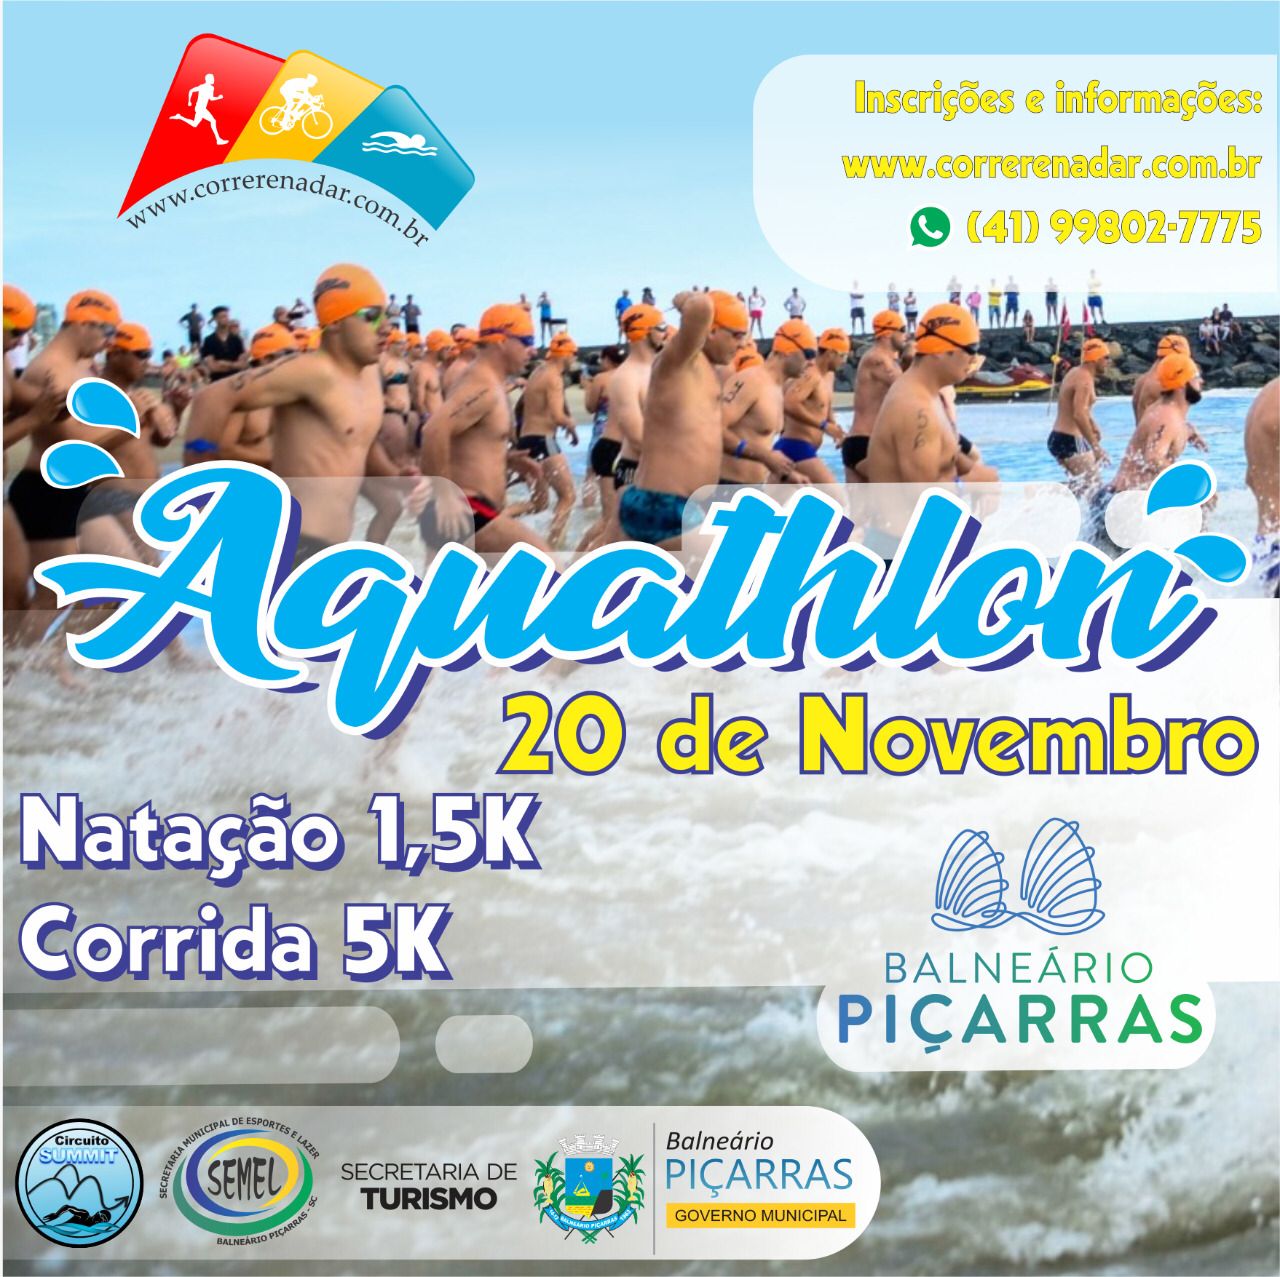 Fim de semana em Balneário Piçarras terá competições de natação e aquathlon